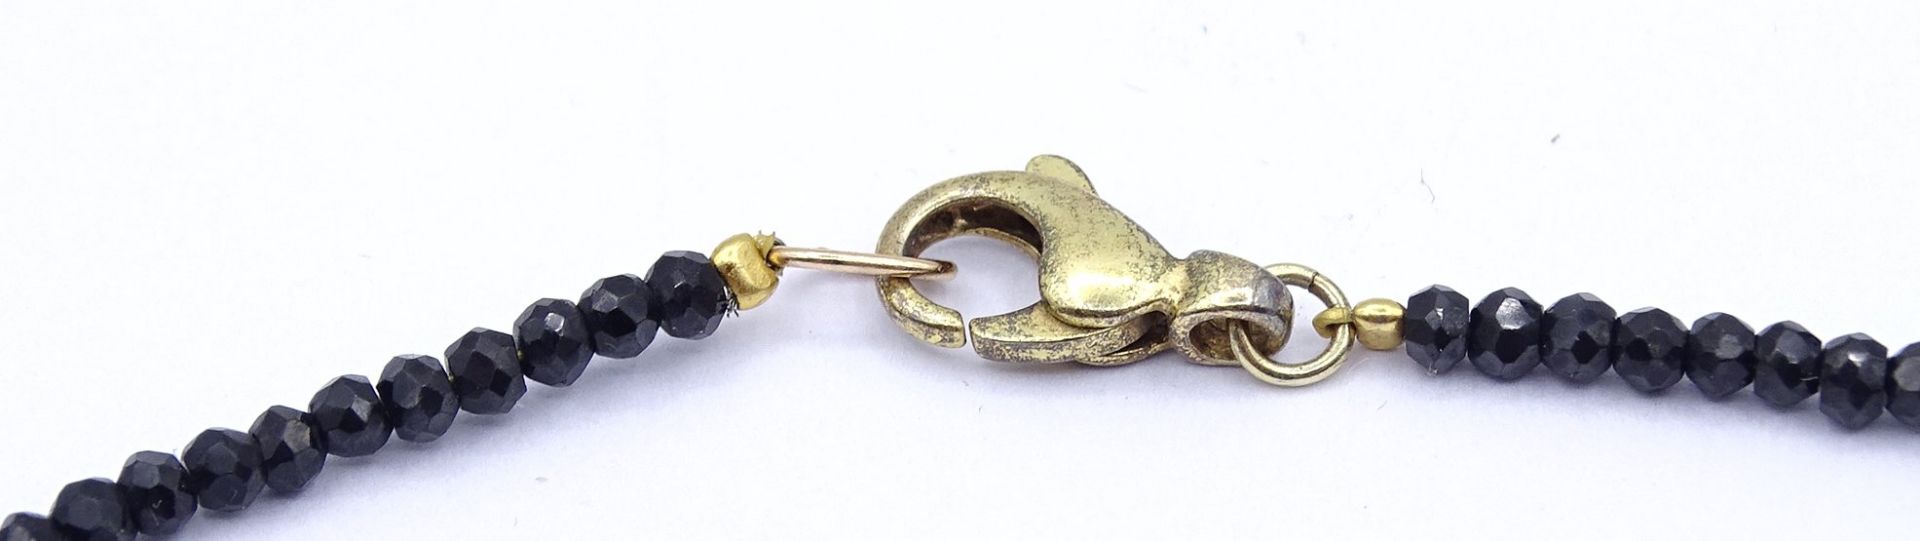 Spinell Halskette mit Perle und Gold Zwischenelemente, Gold um 14K, Karabiner aus Silber 0.925 - ve - Bild 3 aus 6